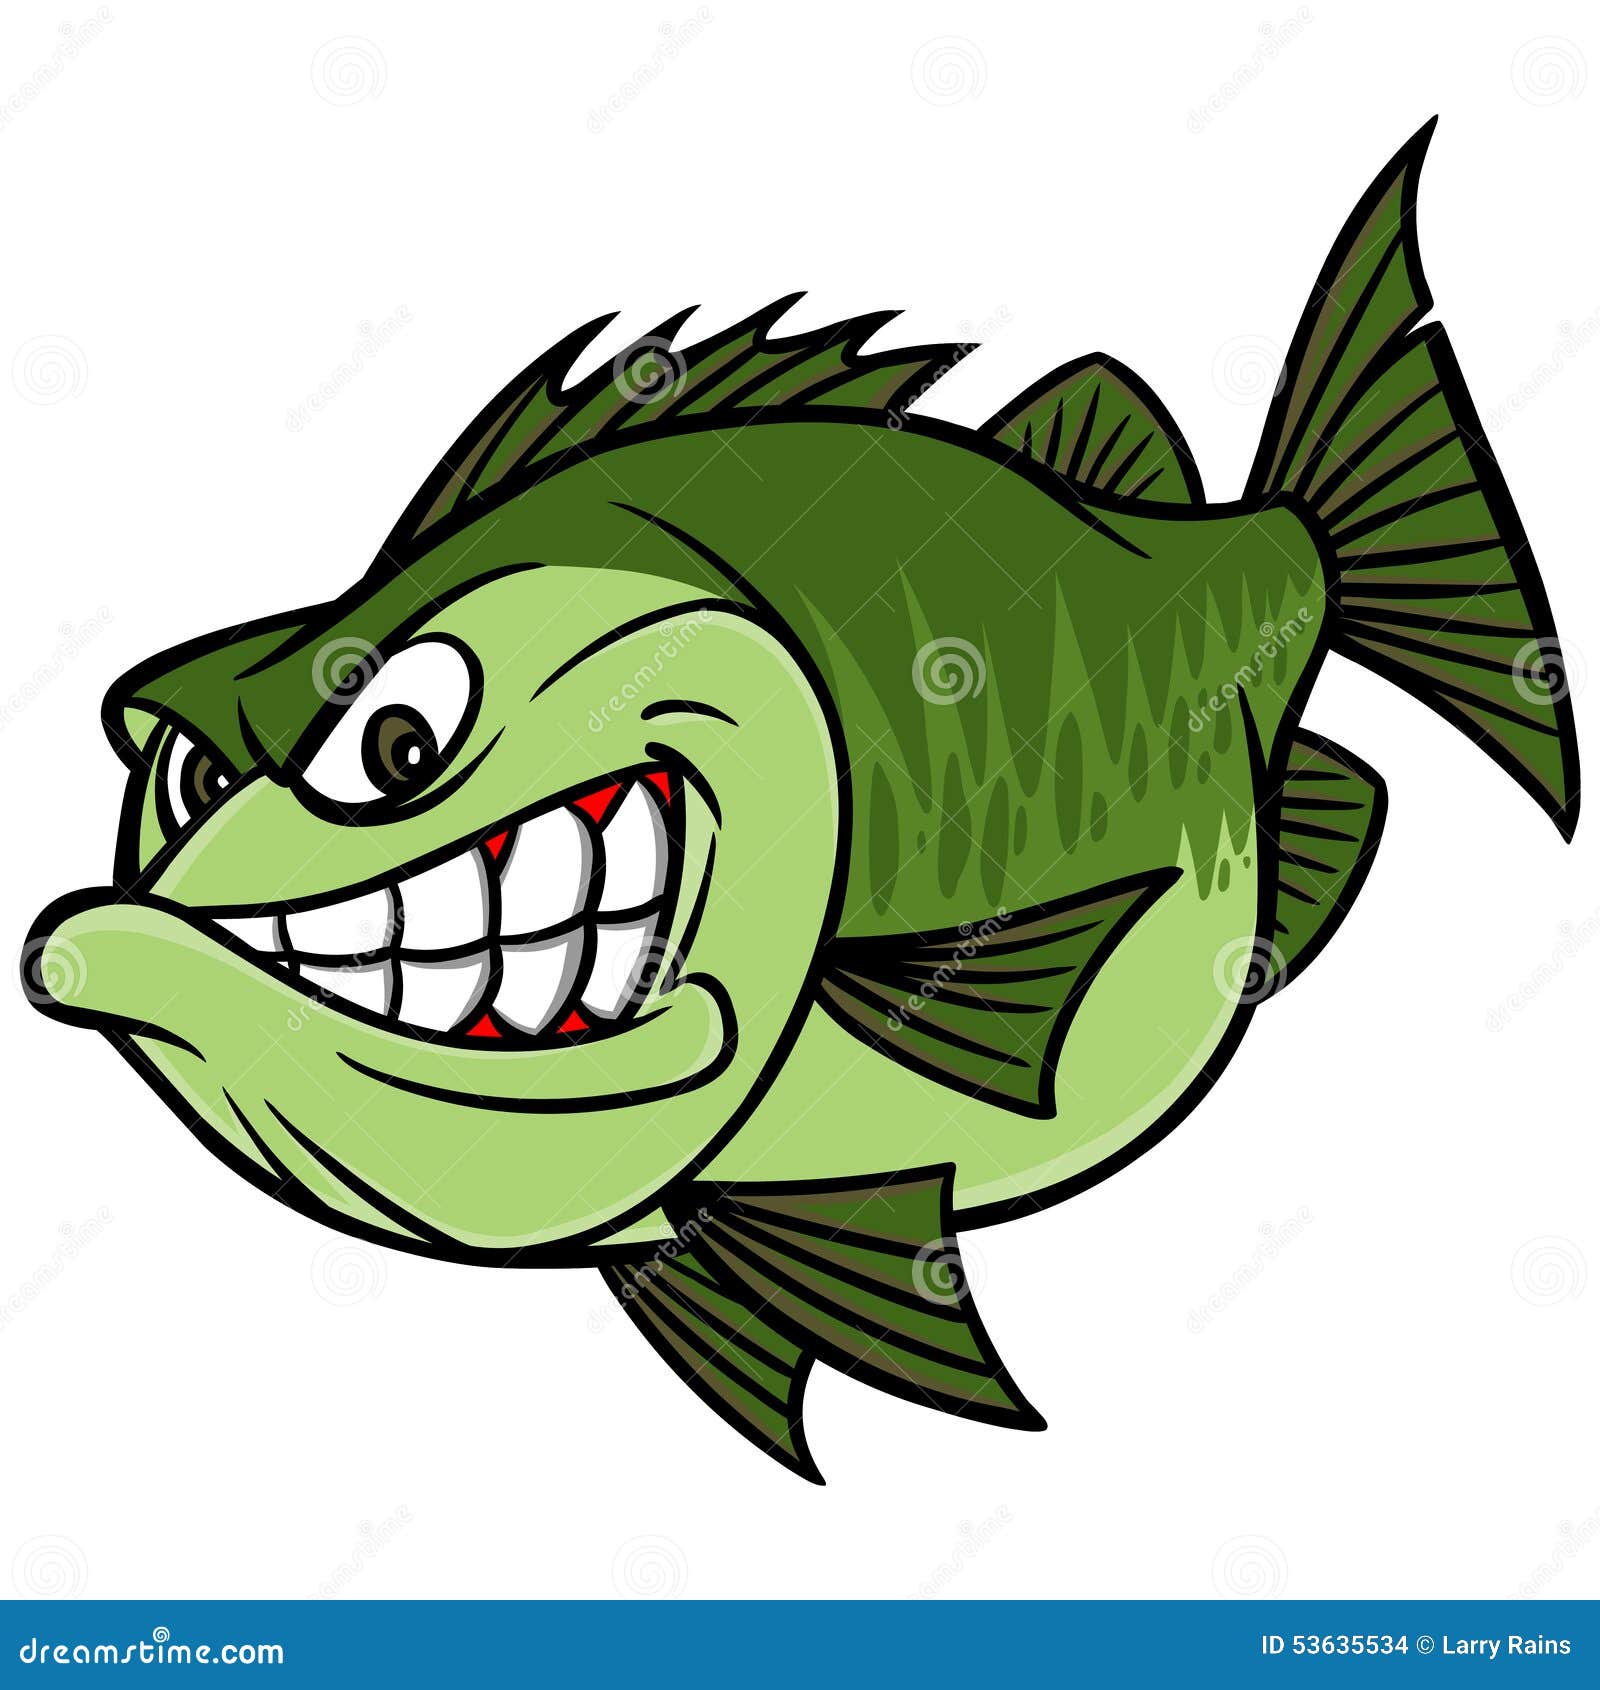 bass fishing mascot